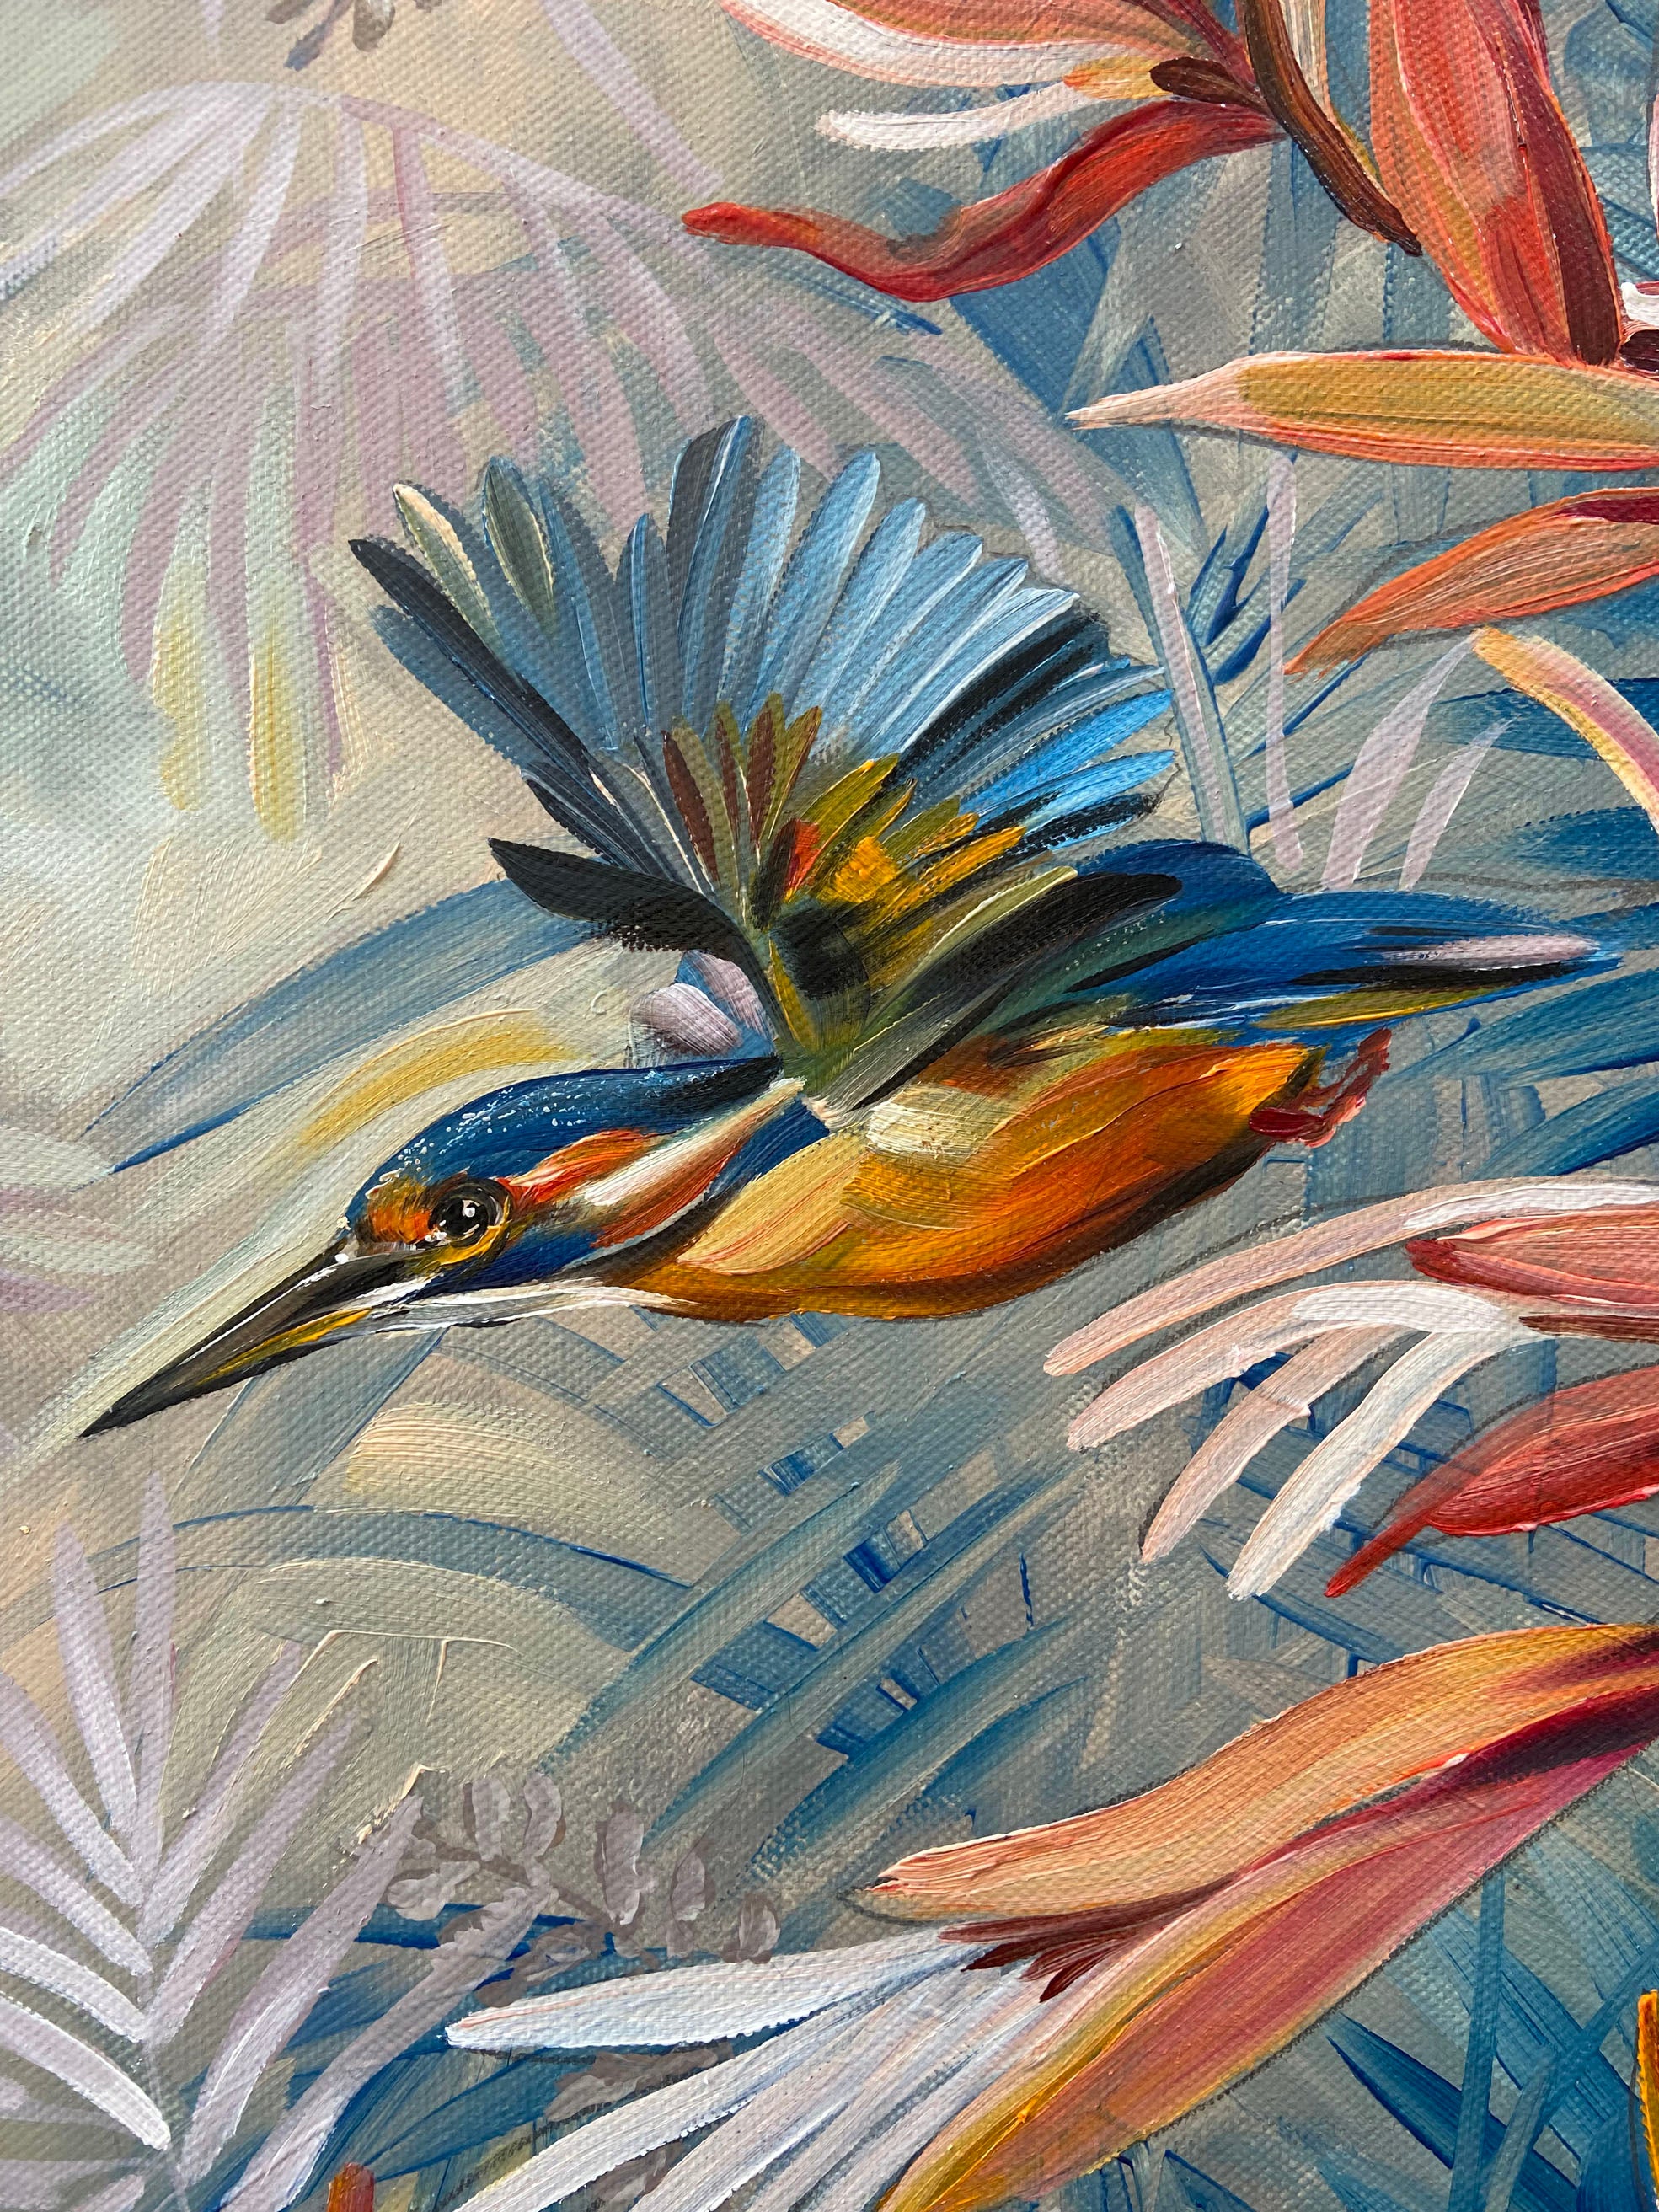 Kingfisher Pair